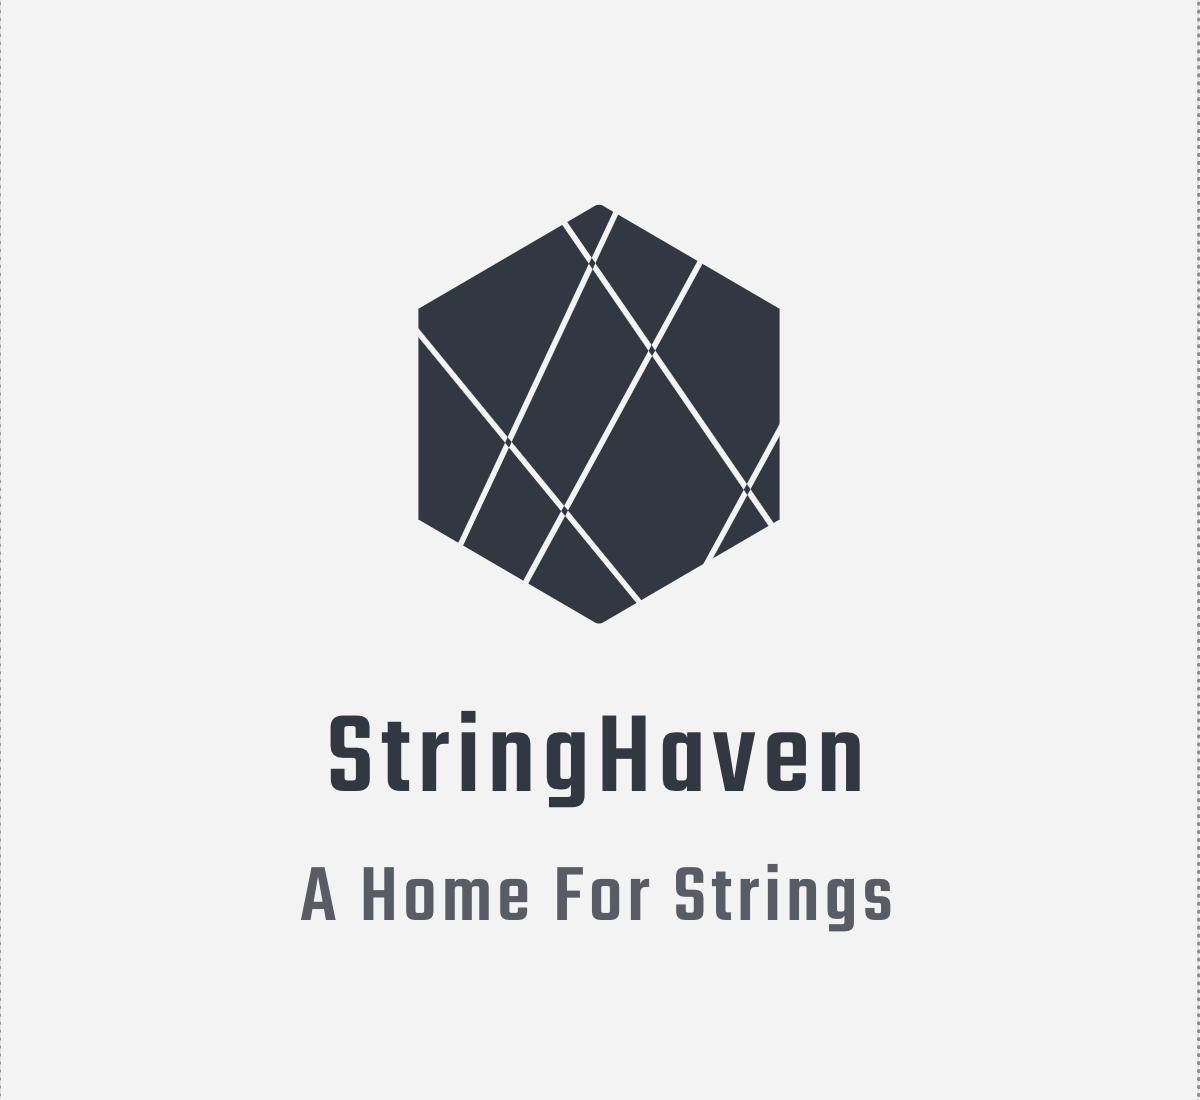 StringHaven